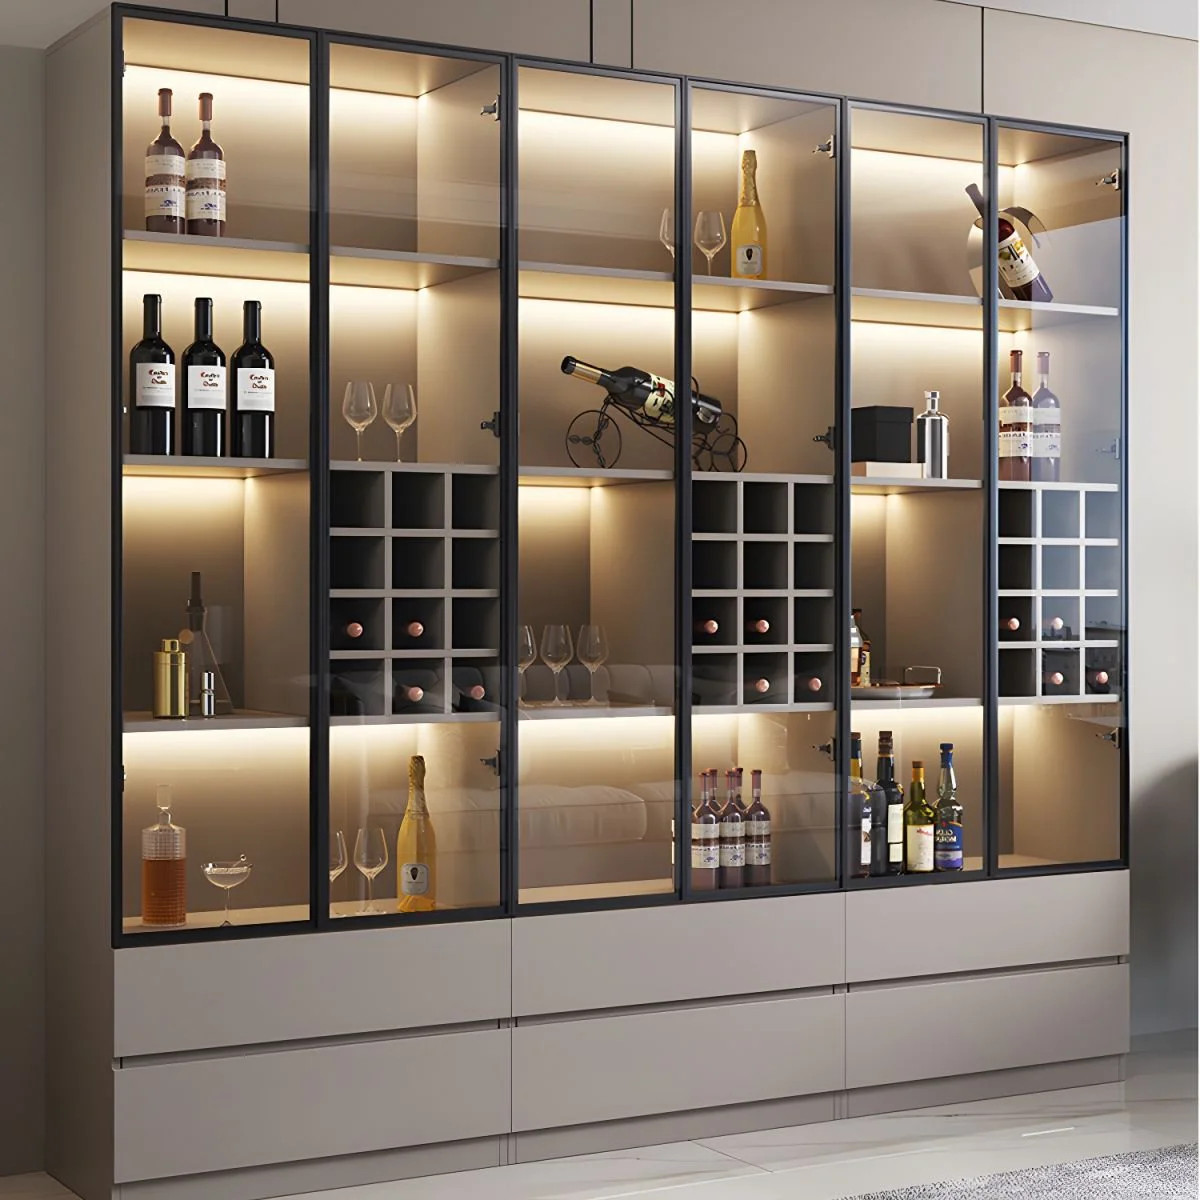 Tủ rượu TDTR21 tạo điểm nhấn tinh tế và sang trọng trong không gian lưu trữ rượu của bạn